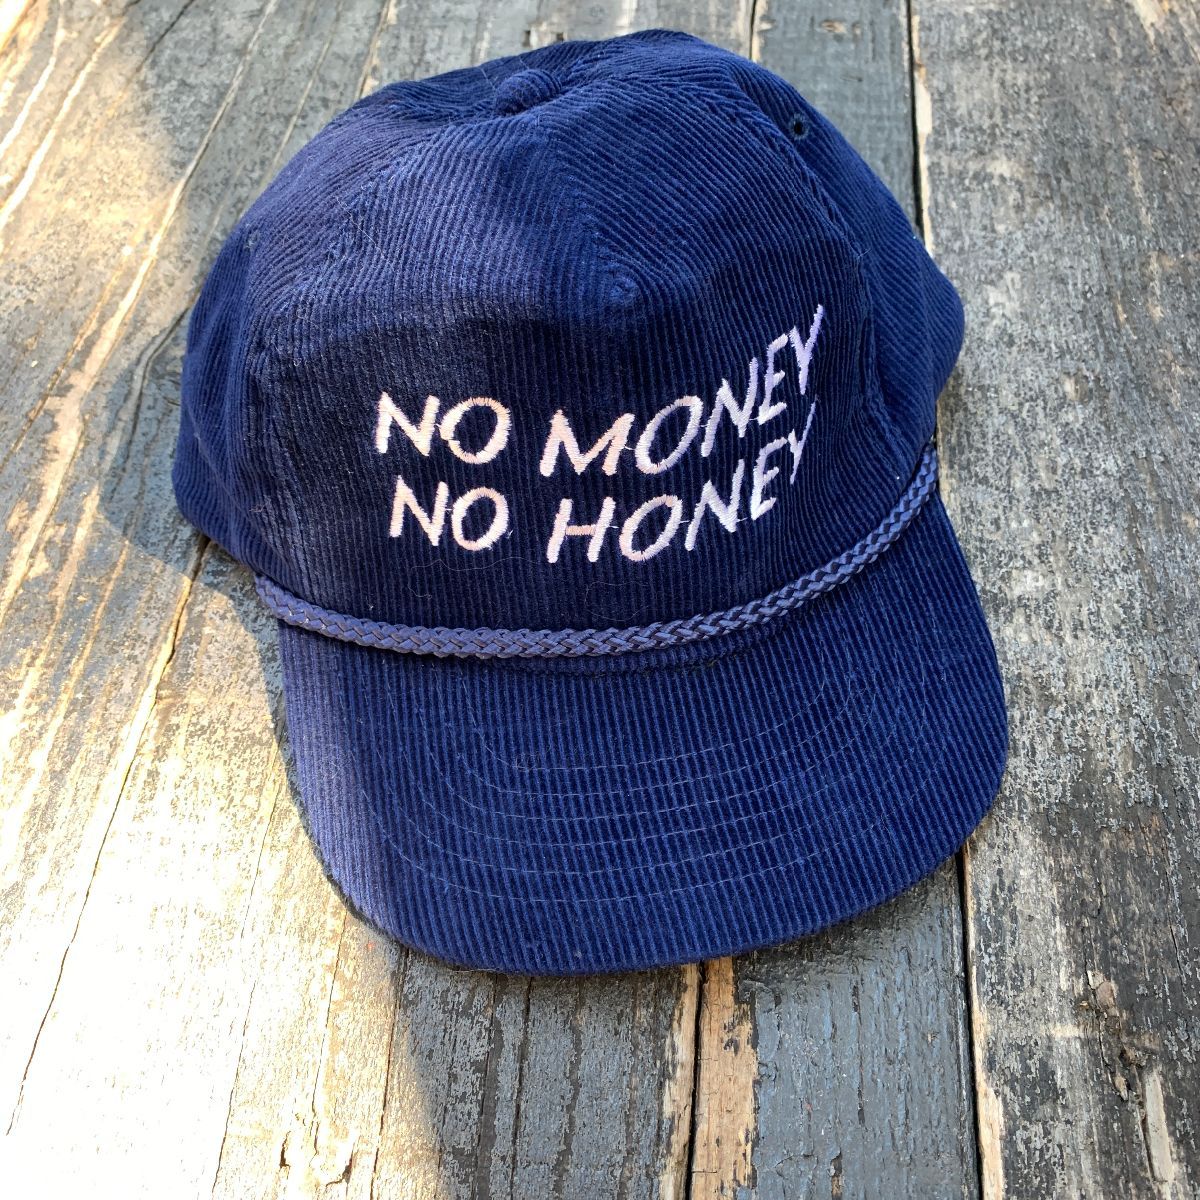 No honey no money